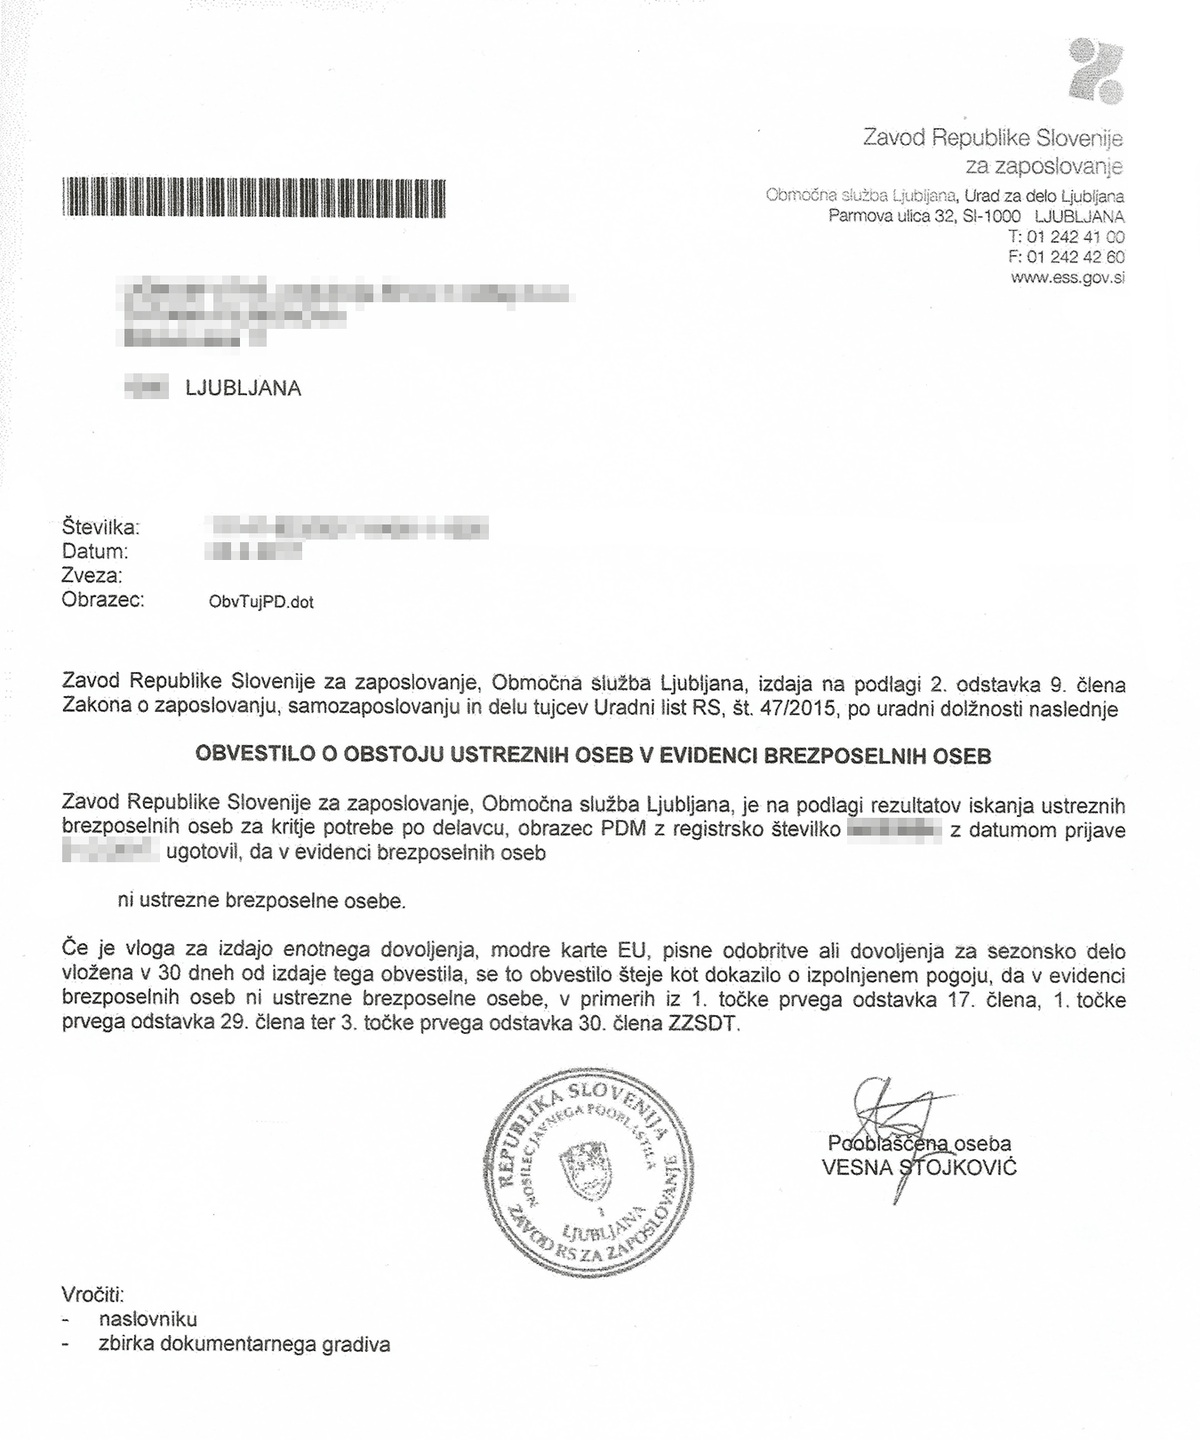 «Письмо счастья» о том, что в Словении не нашлось подходящих под мою вакансию безработных словенцев и можно трудоустраивать иностранца. Это разрешение действительно 30 дней, так что после его получения лучше сразу подавать документы на ВНЖ